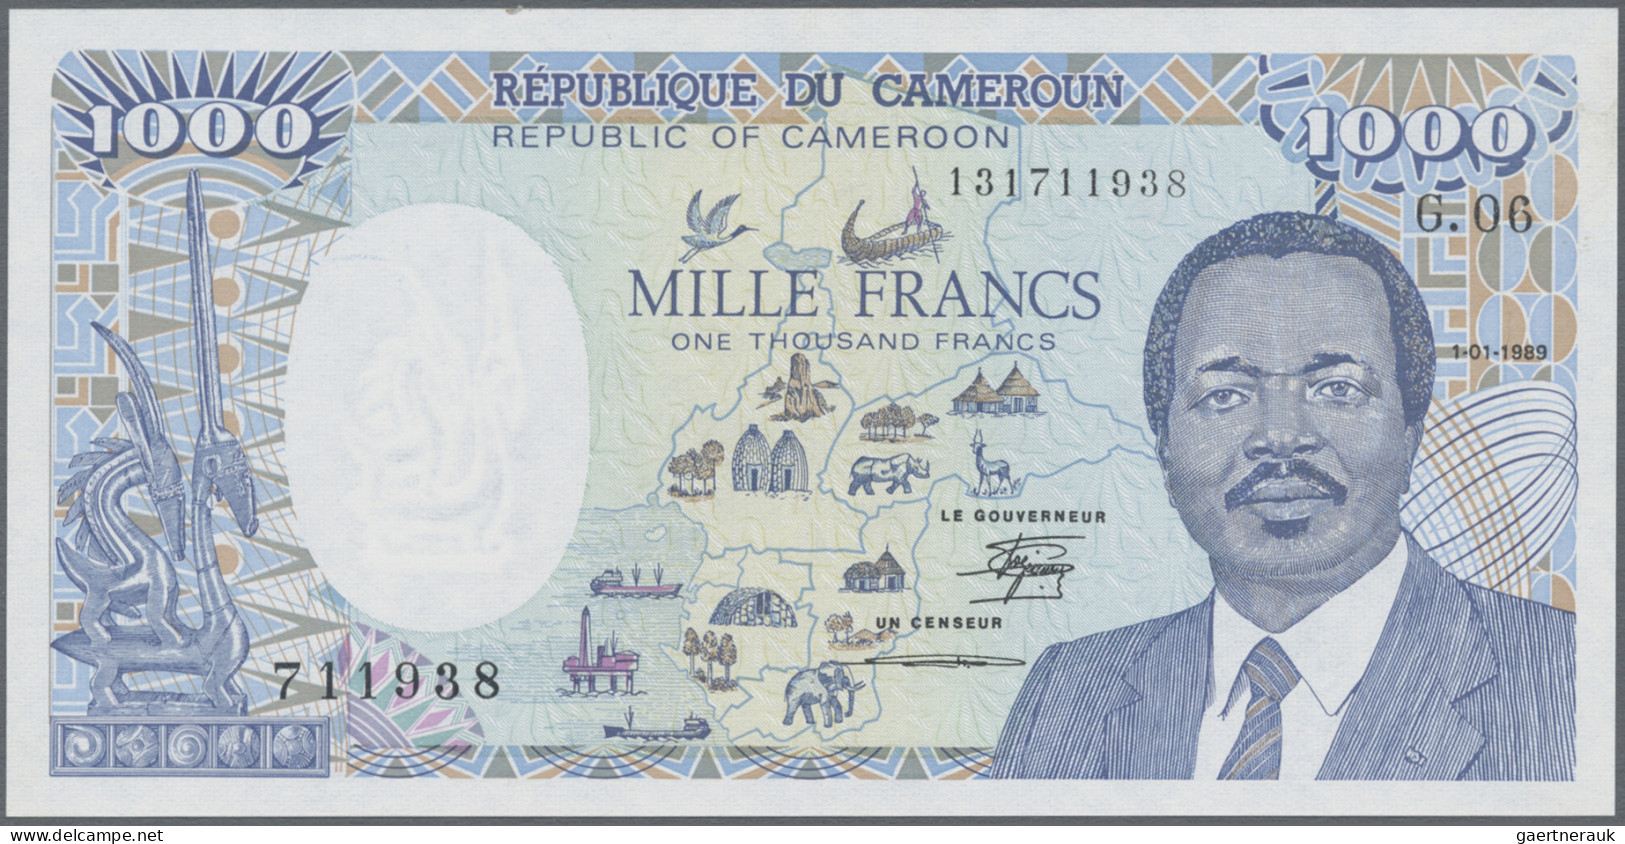 Cameroon: Banque Des États De L'Afrique Centrale - République Du Cameroun, Pair - Kamerun